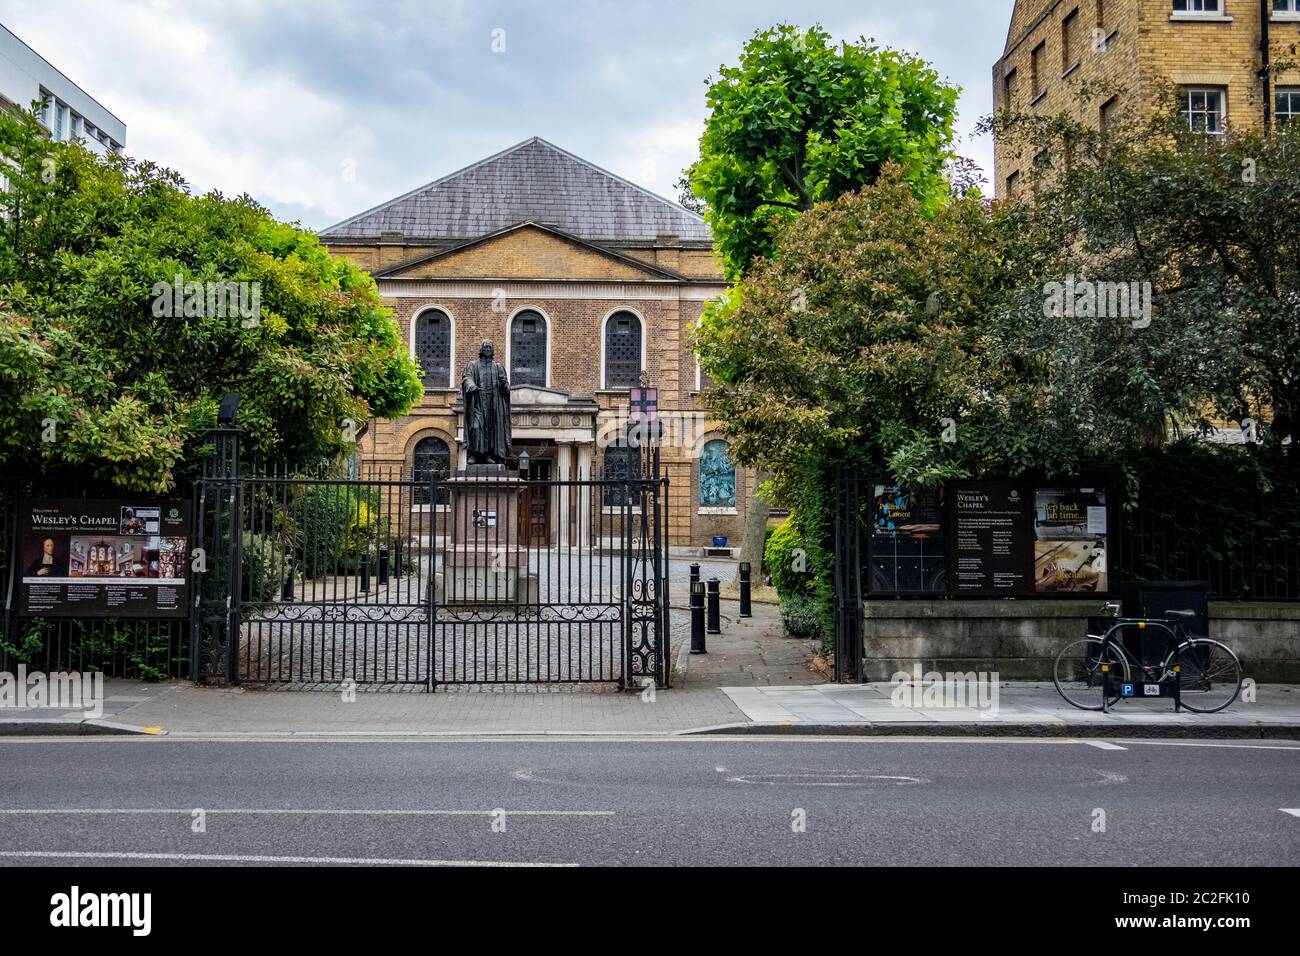 Wesley's Chapel - eine methodistische Kirche im südlichen Teil des Londoner Stadtteils Islington Stockfoto